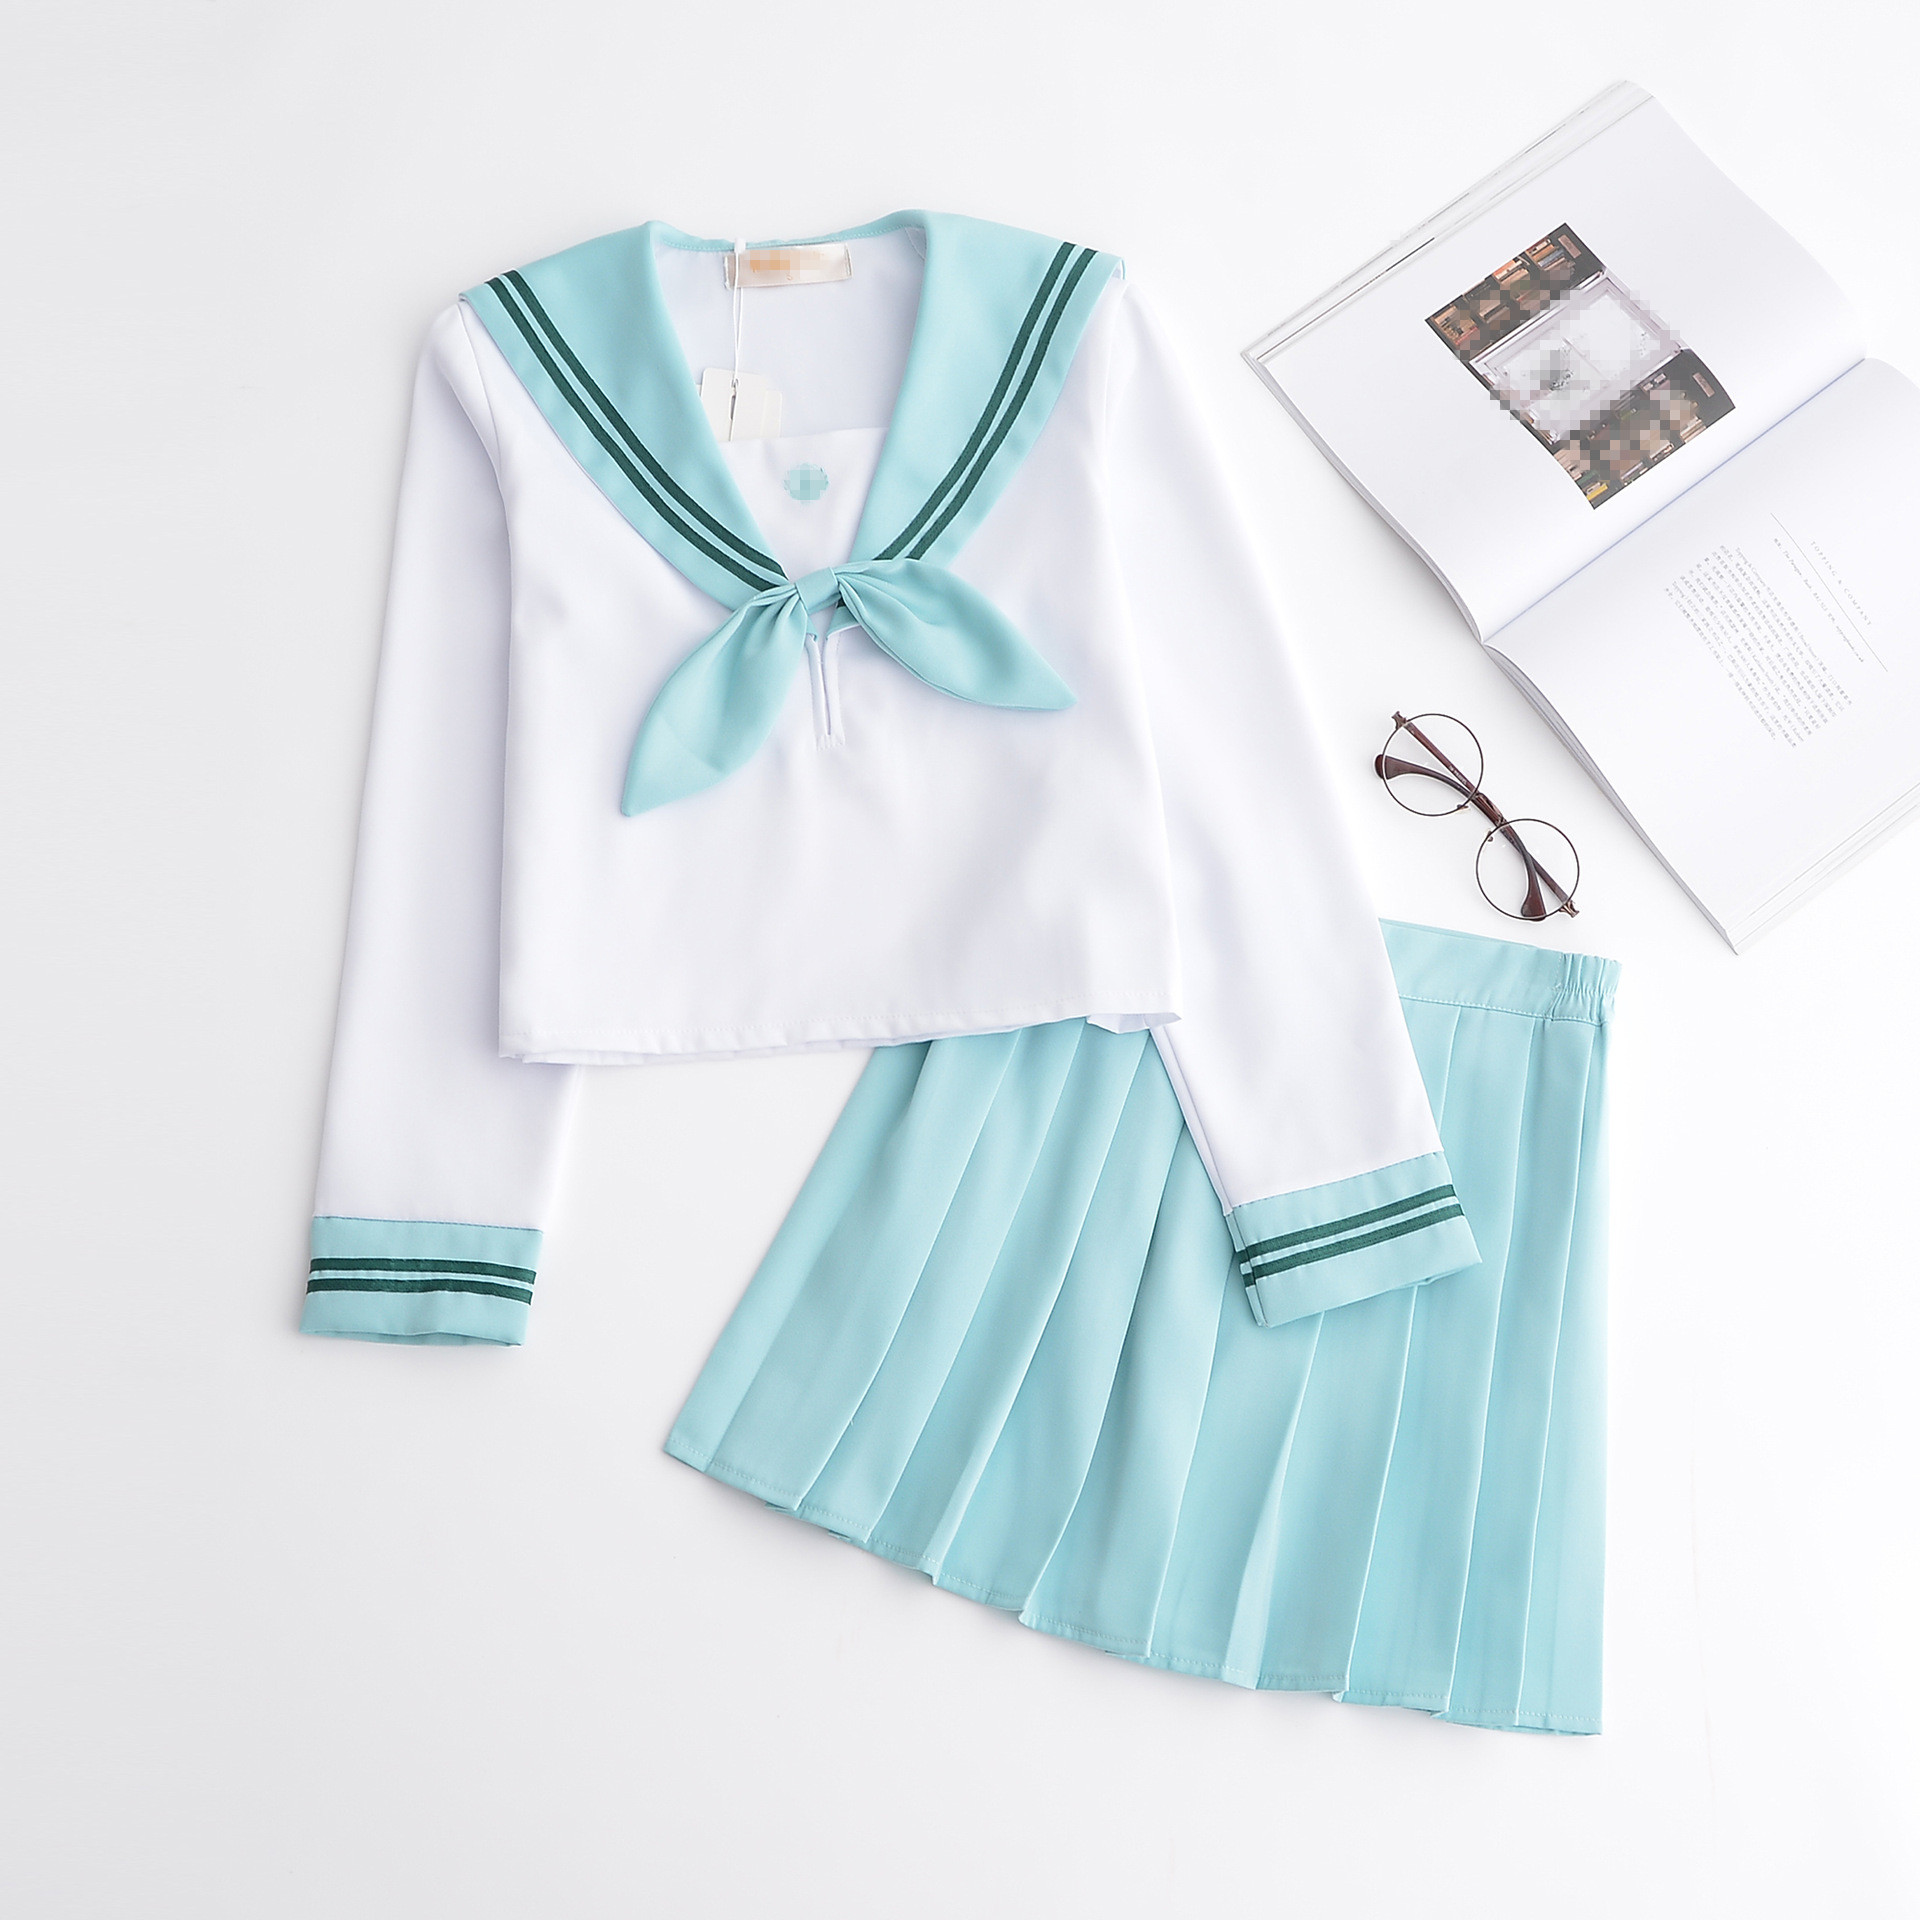 Sakura Light Pink Japanese School Uniform Skirt JK Uniform Class Uniforms Sailor Suit College Wind Suit Female Students Uniforms